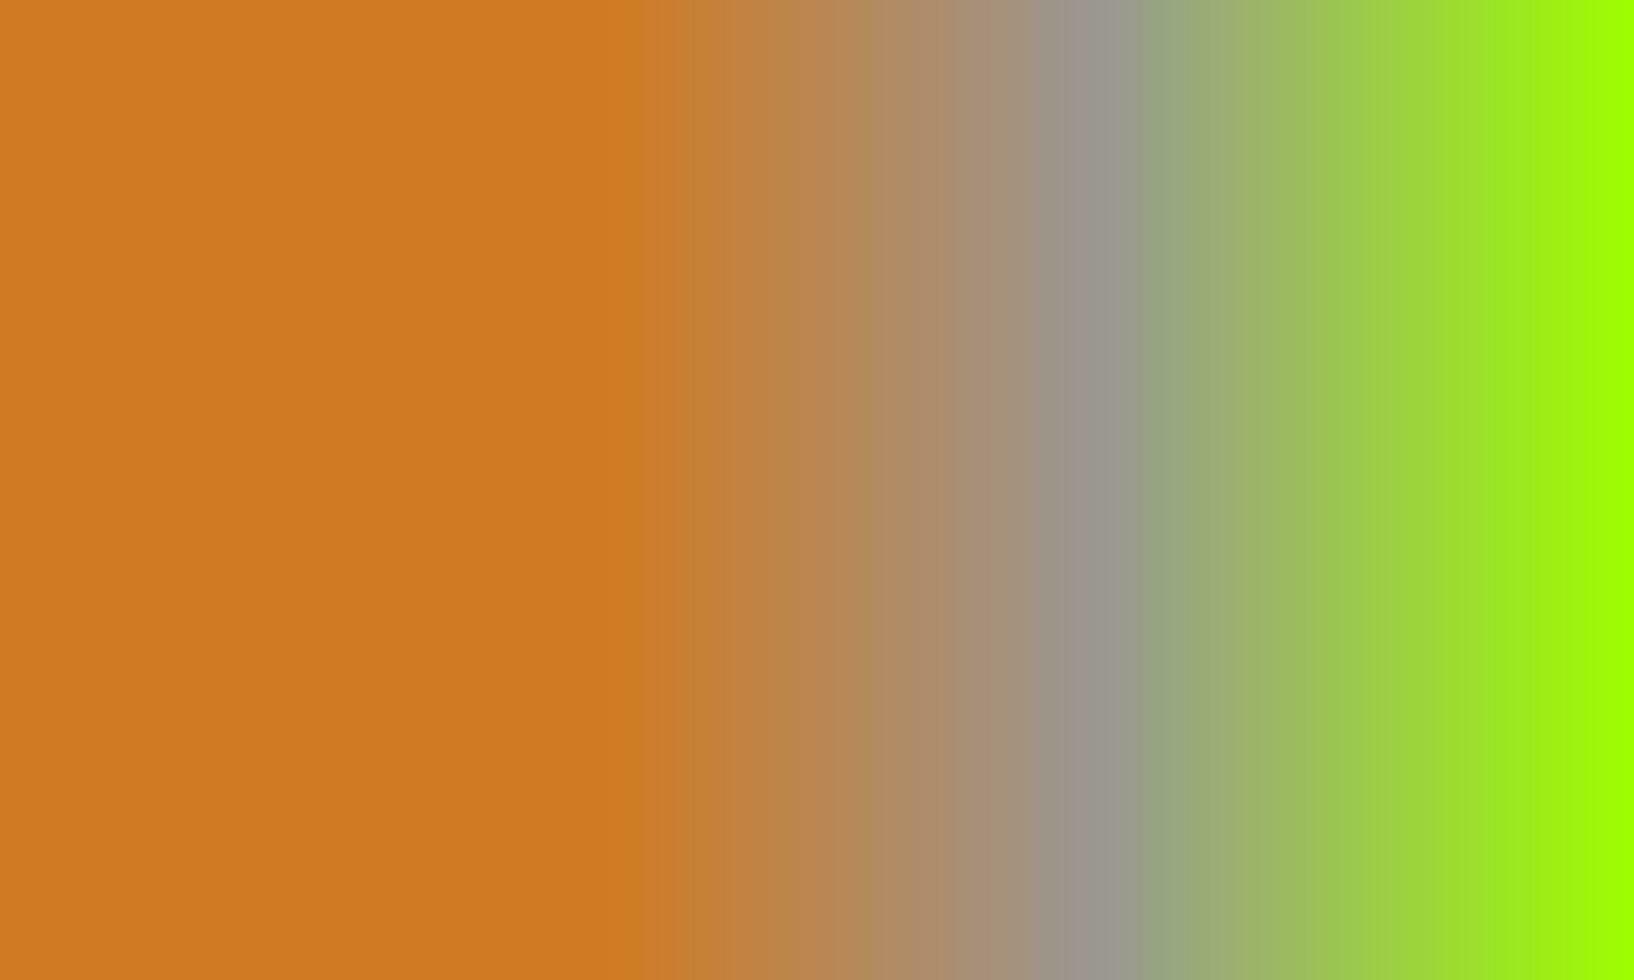 design semplice evidenziatore verde, arancione e grigio pendenza colore illustrazione sfondo foto